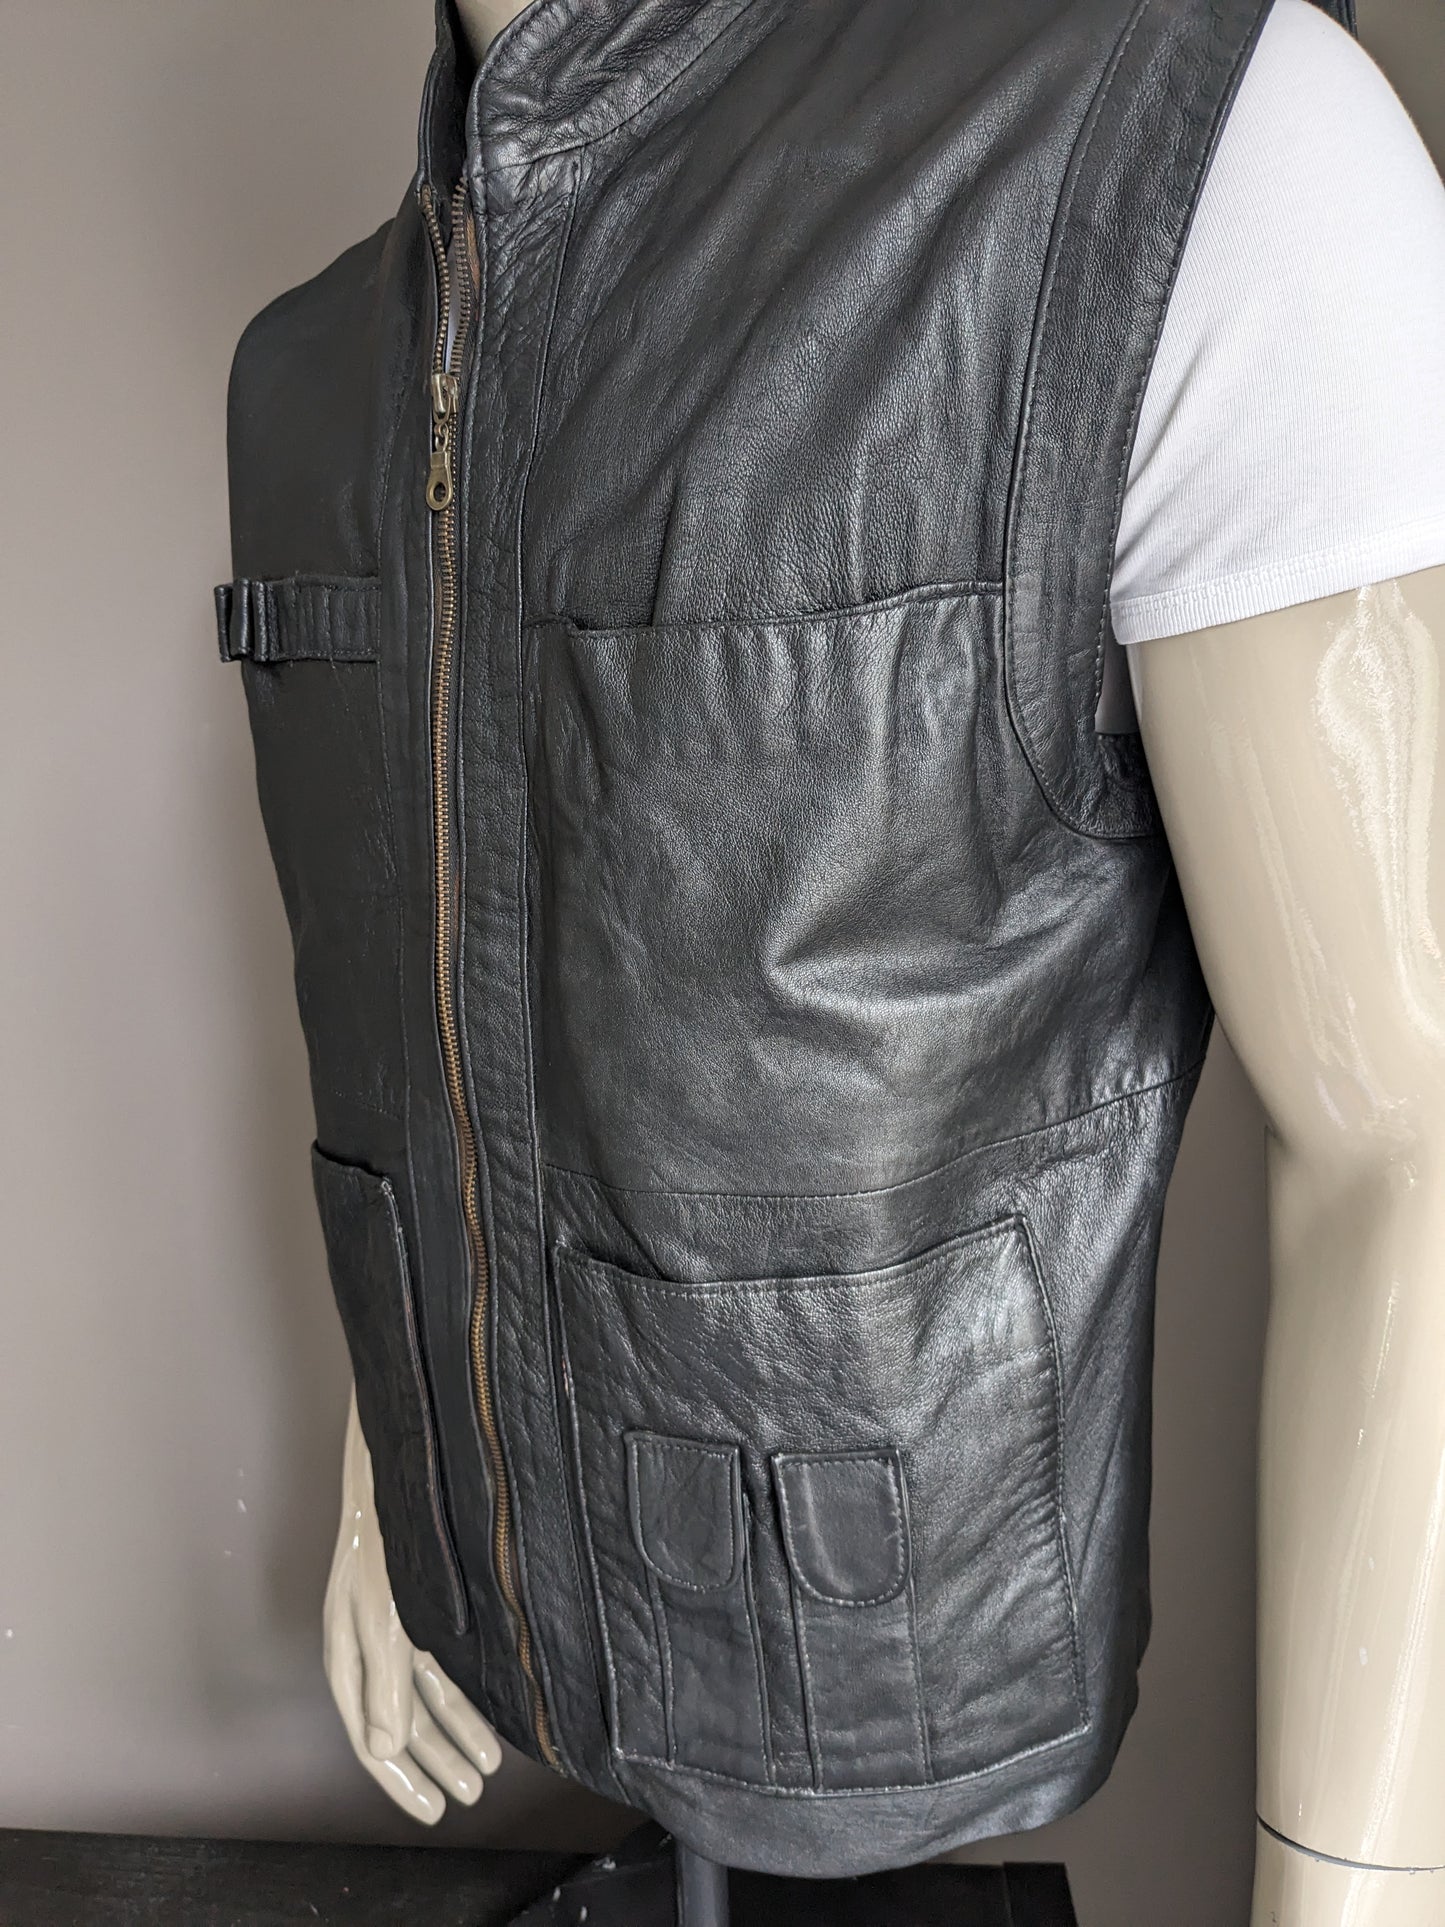 Cuir Vintage Cuir à demi-longueur CHAUDER avec des sacs. Couleur noire. Taille L. 1 poche intérieure.